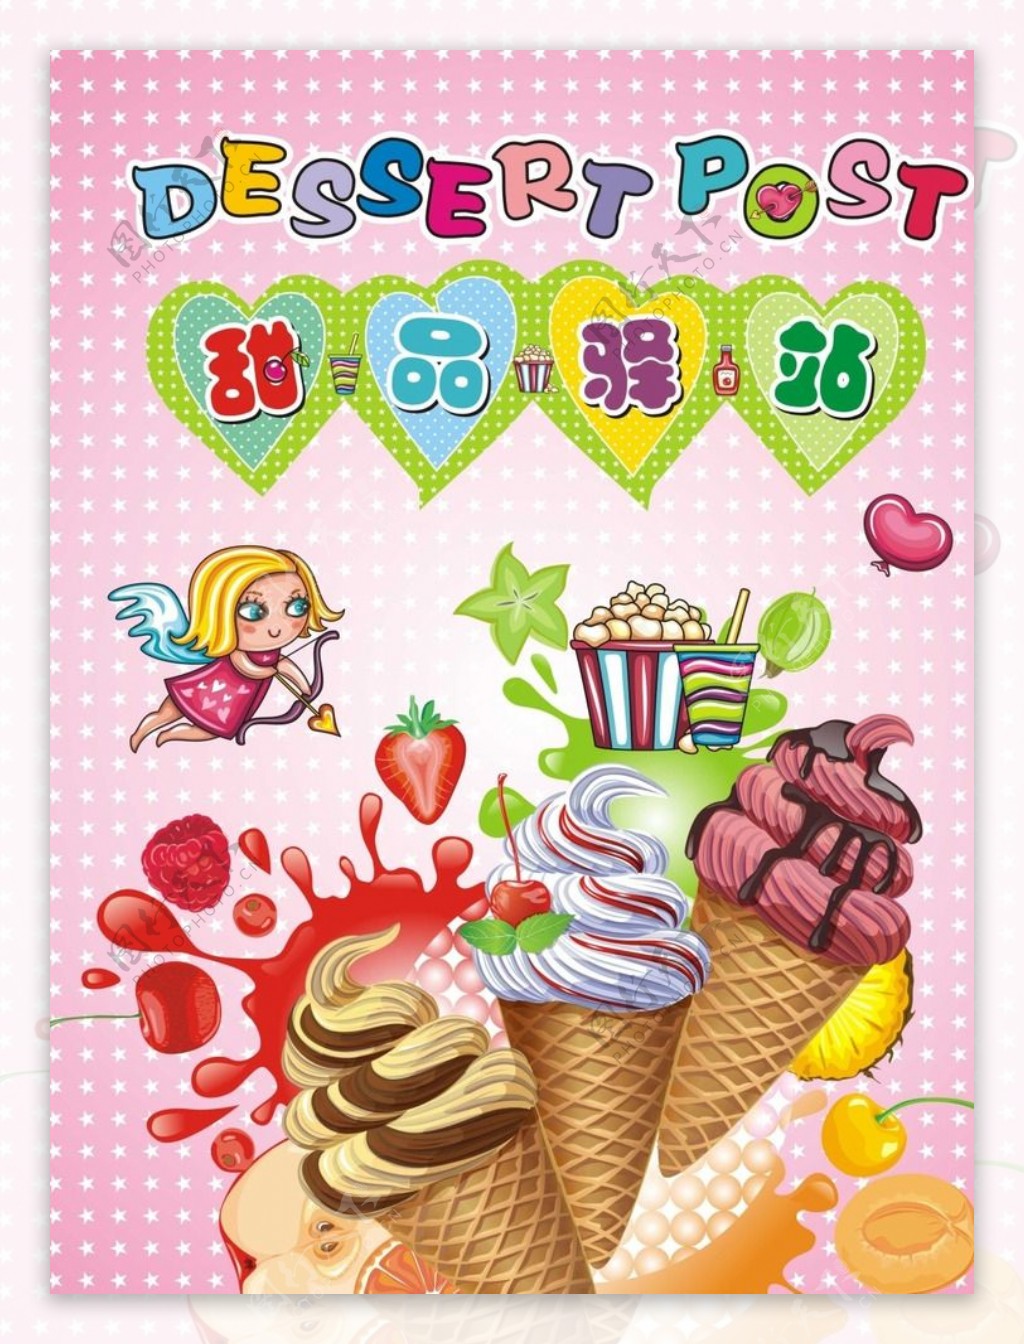 甜品驿站冰淇淋店海报图片